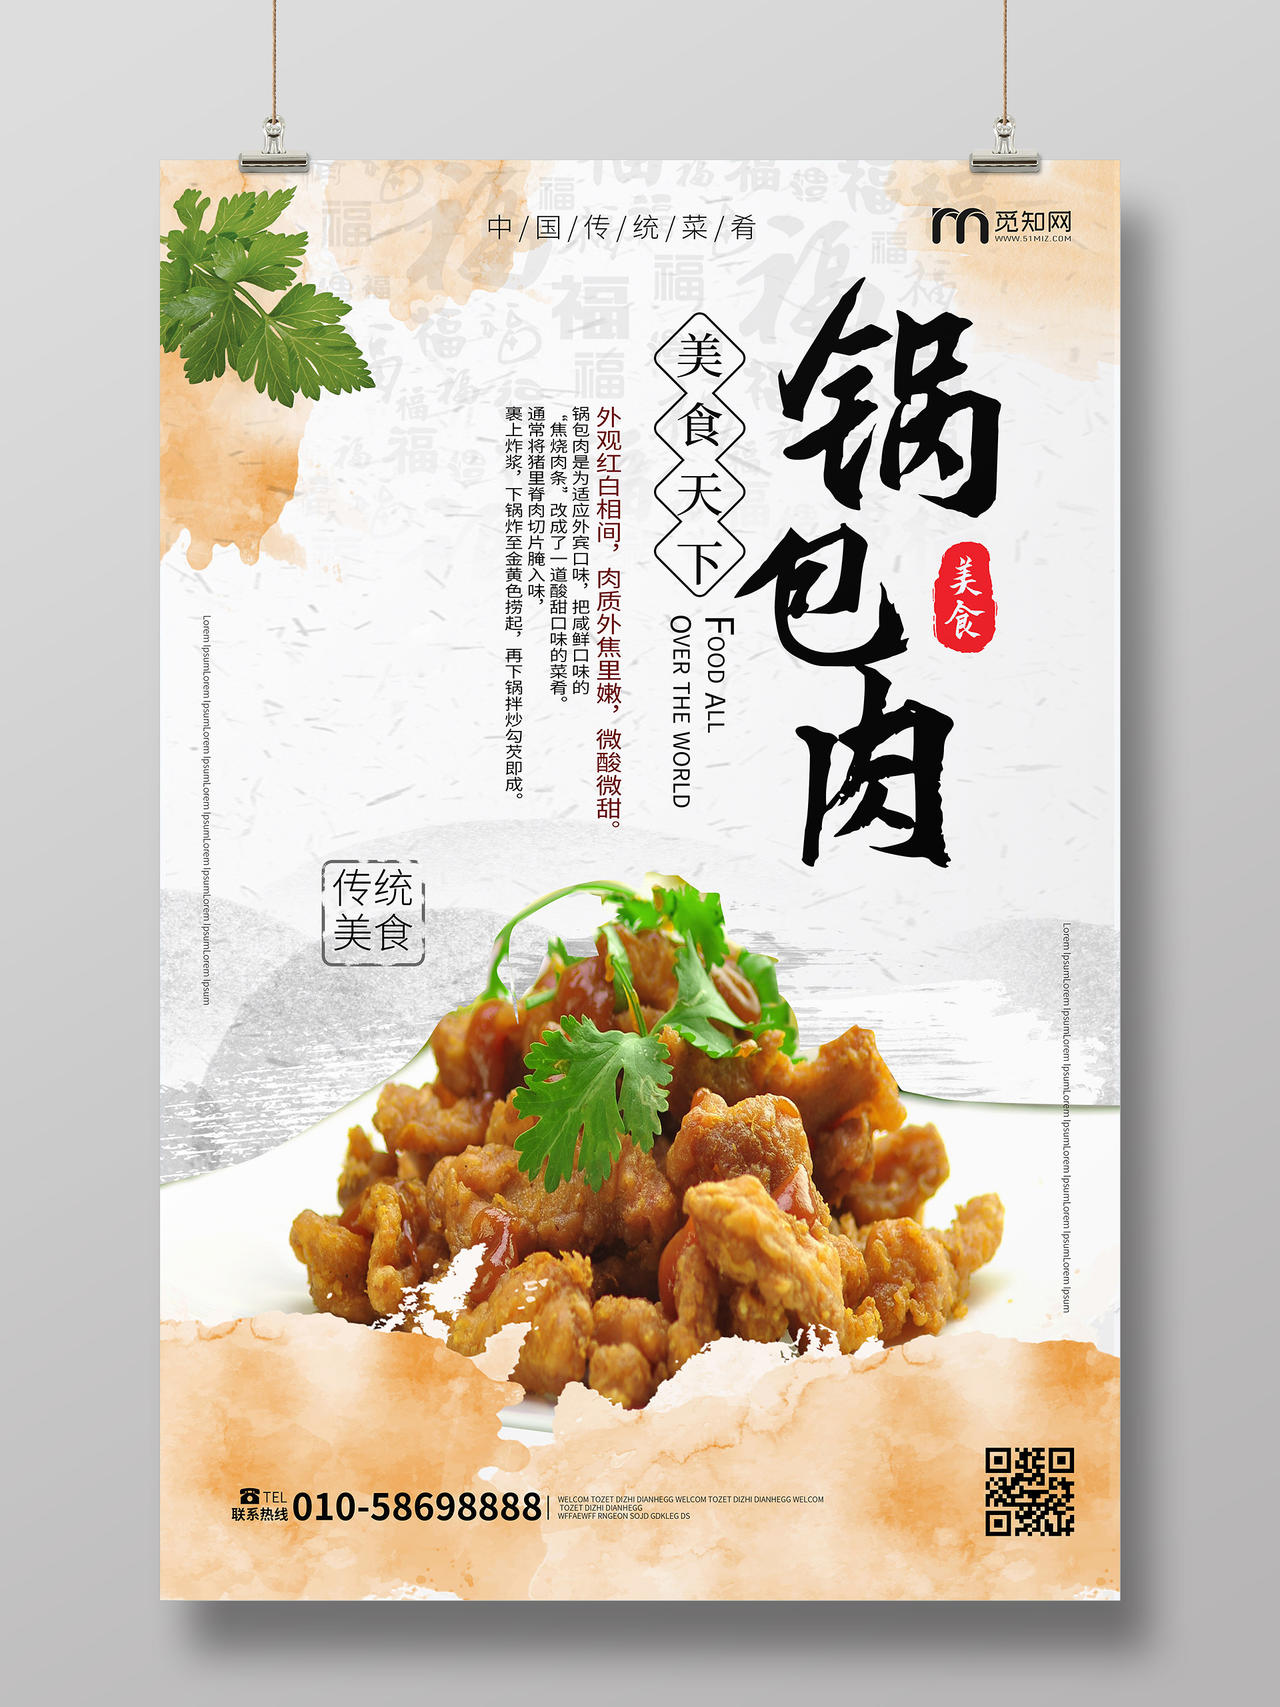 白色背景简洁水墨中国风锅包肉中国传统美食海报水墨美食